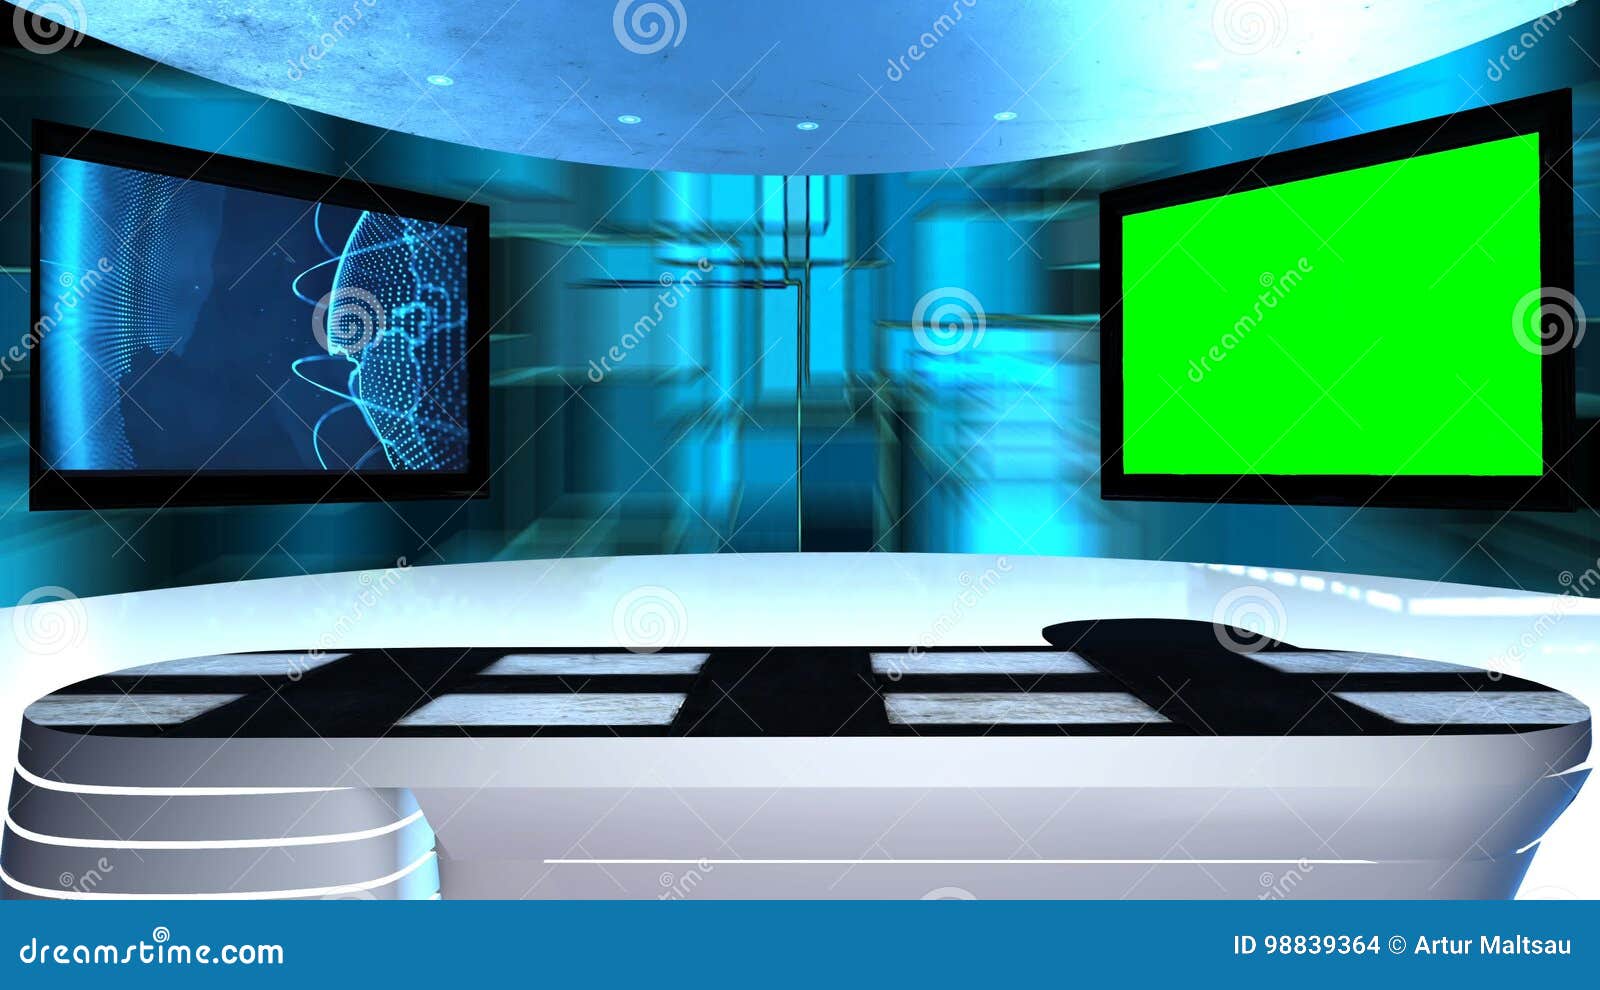 3d virtual tv studio news: Cùng tham gia trong một studio tin tức hoàn toàn ảo, khổng lồ và tuyệt đẹp trên khắp thế giới! Được thiết kế với phần mềm 3D cao cấp và chất lượng hình ảnh cực kỳ sắc nét, bạn sẽ có cơ hội trở thành nữ phóng viên hàng đầu, cho phép người xem cảm thấy như chính mình đang đứng trong trung tâm tin tức hàng đầu thế giới.